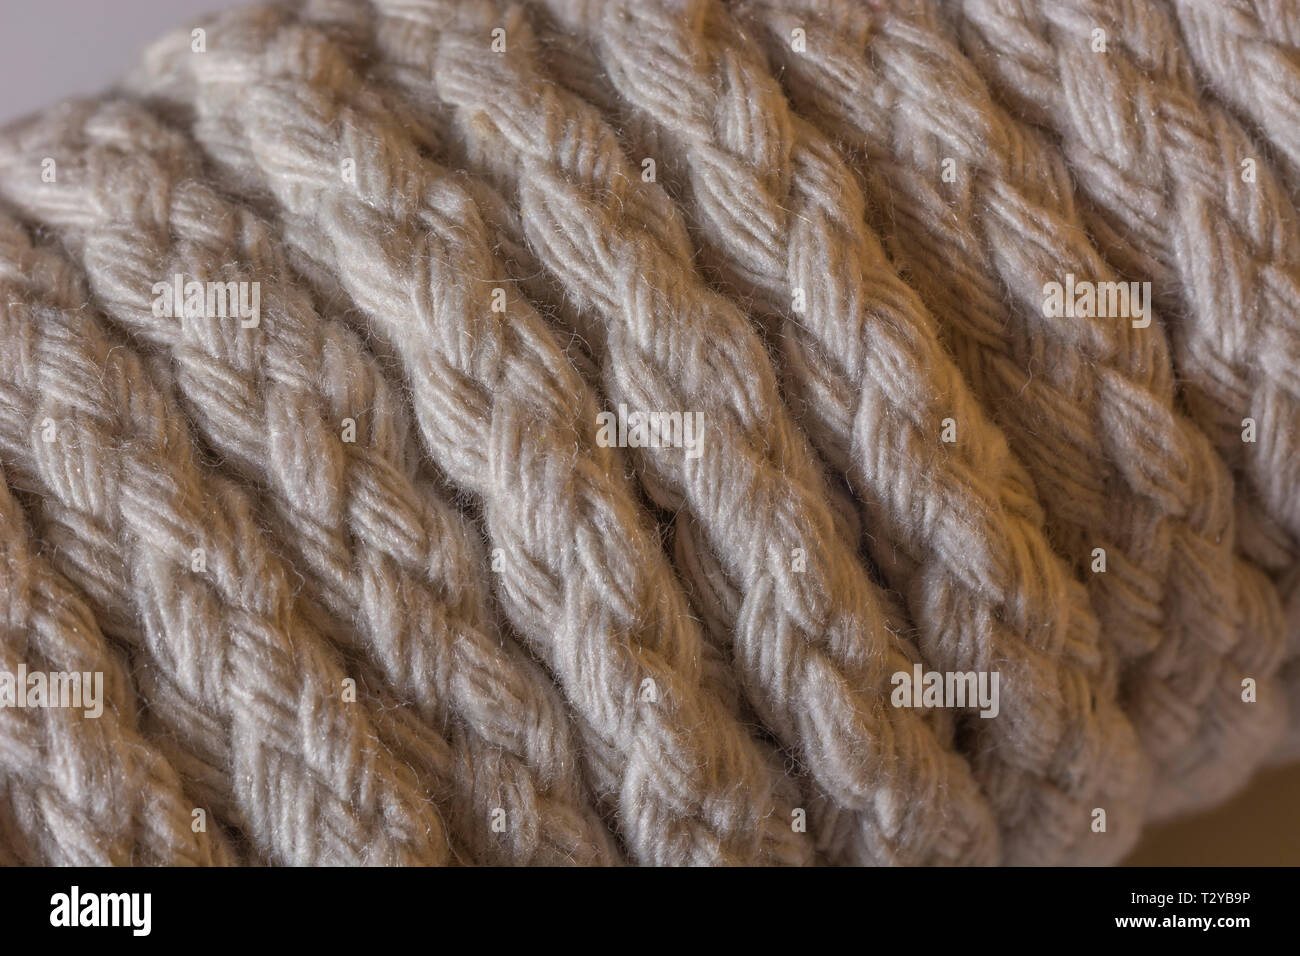 Nahaufnahme eines Hank der natürlichen mehrsträngigen Baumwolle Cord - für Wäscheleinen und anderen Jobs verwendet. Metapher 'genug Seil". Stockfoto